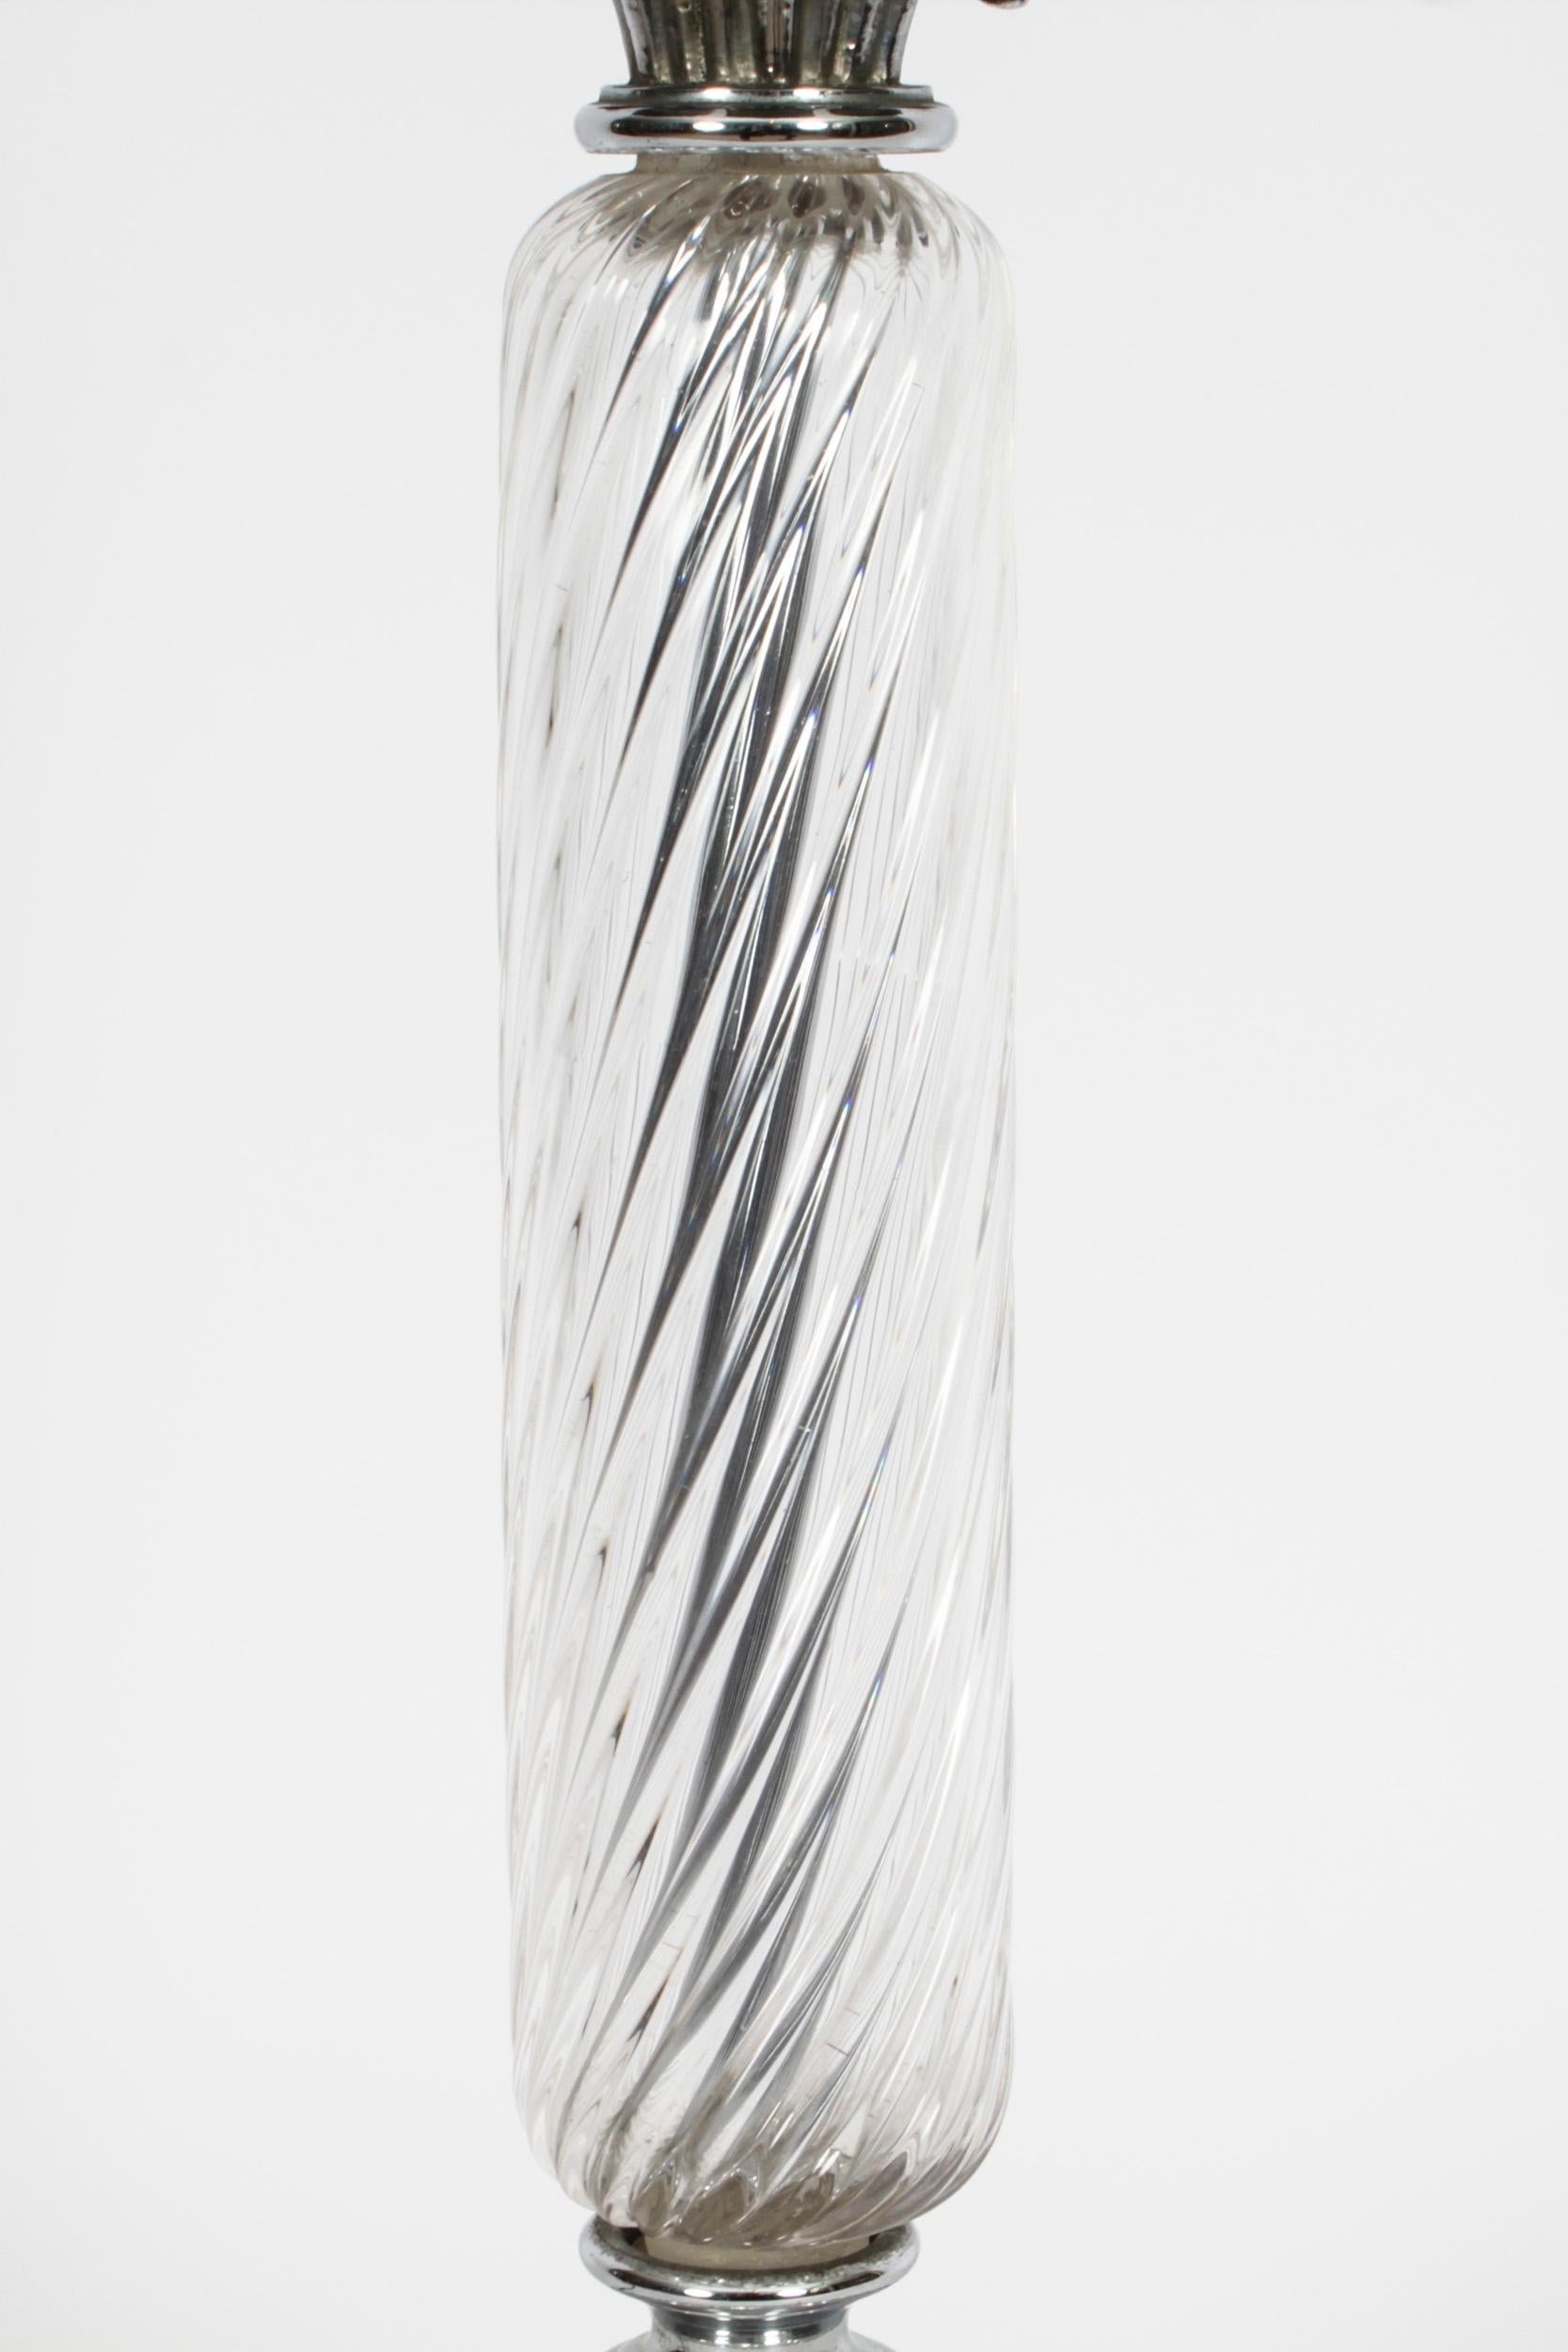 Dies ist eine elegante und raffinierte Tischlampe aus Glas und Silber aus der Mitte des 20. Jahrhunderts.

Diese stilvolle Lampe hat einen auffälligen Blumenkopf mit gedrehtem, geriffeltem Stiel auf einem gewölbten Sockel, der in dreibeinigen